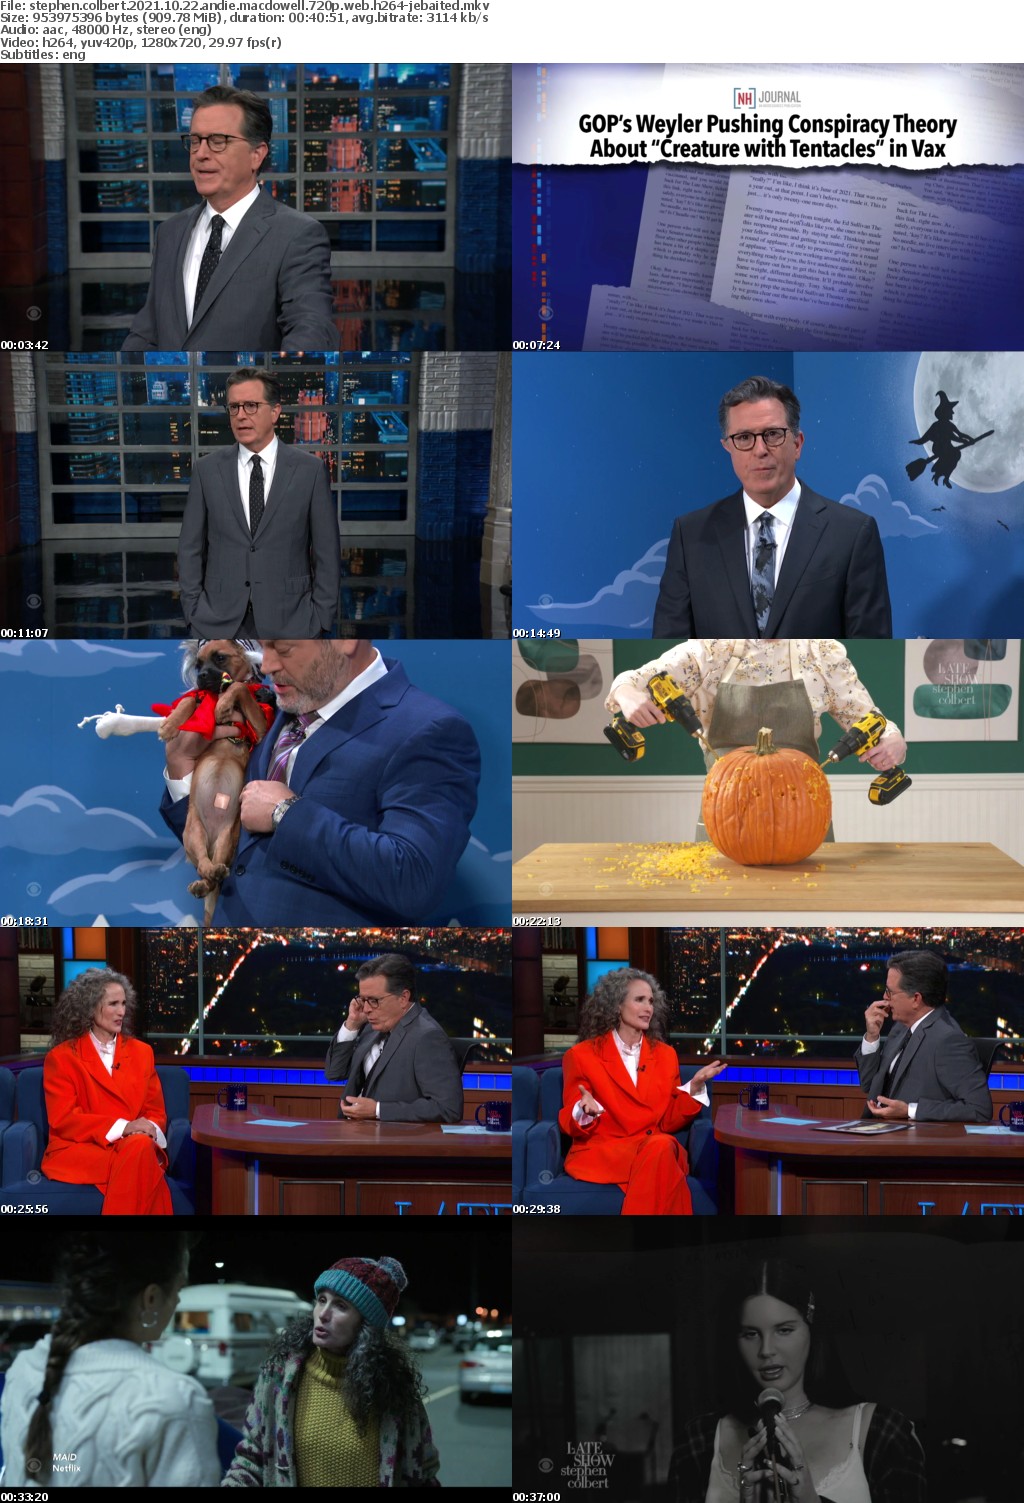 Stephen Colbert 2021 10 22 Andie MacDowell 720p WEB H264-JEBAITED